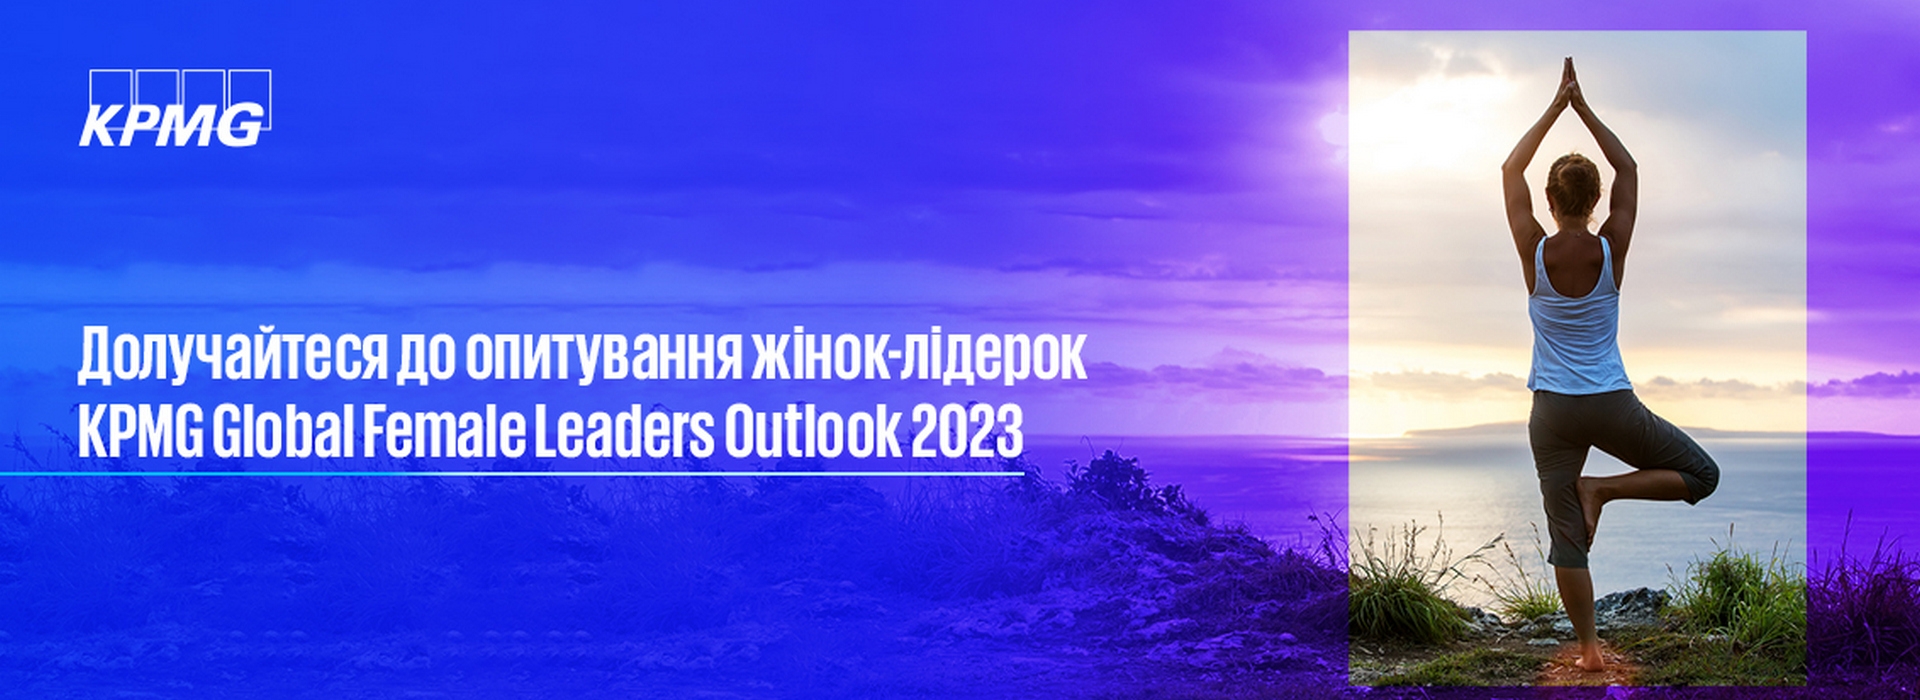 Опитування жінок-лідерок KPMG Global Female Leaders Outlook 2023 KPMG в Україні продовжено до 21 травня